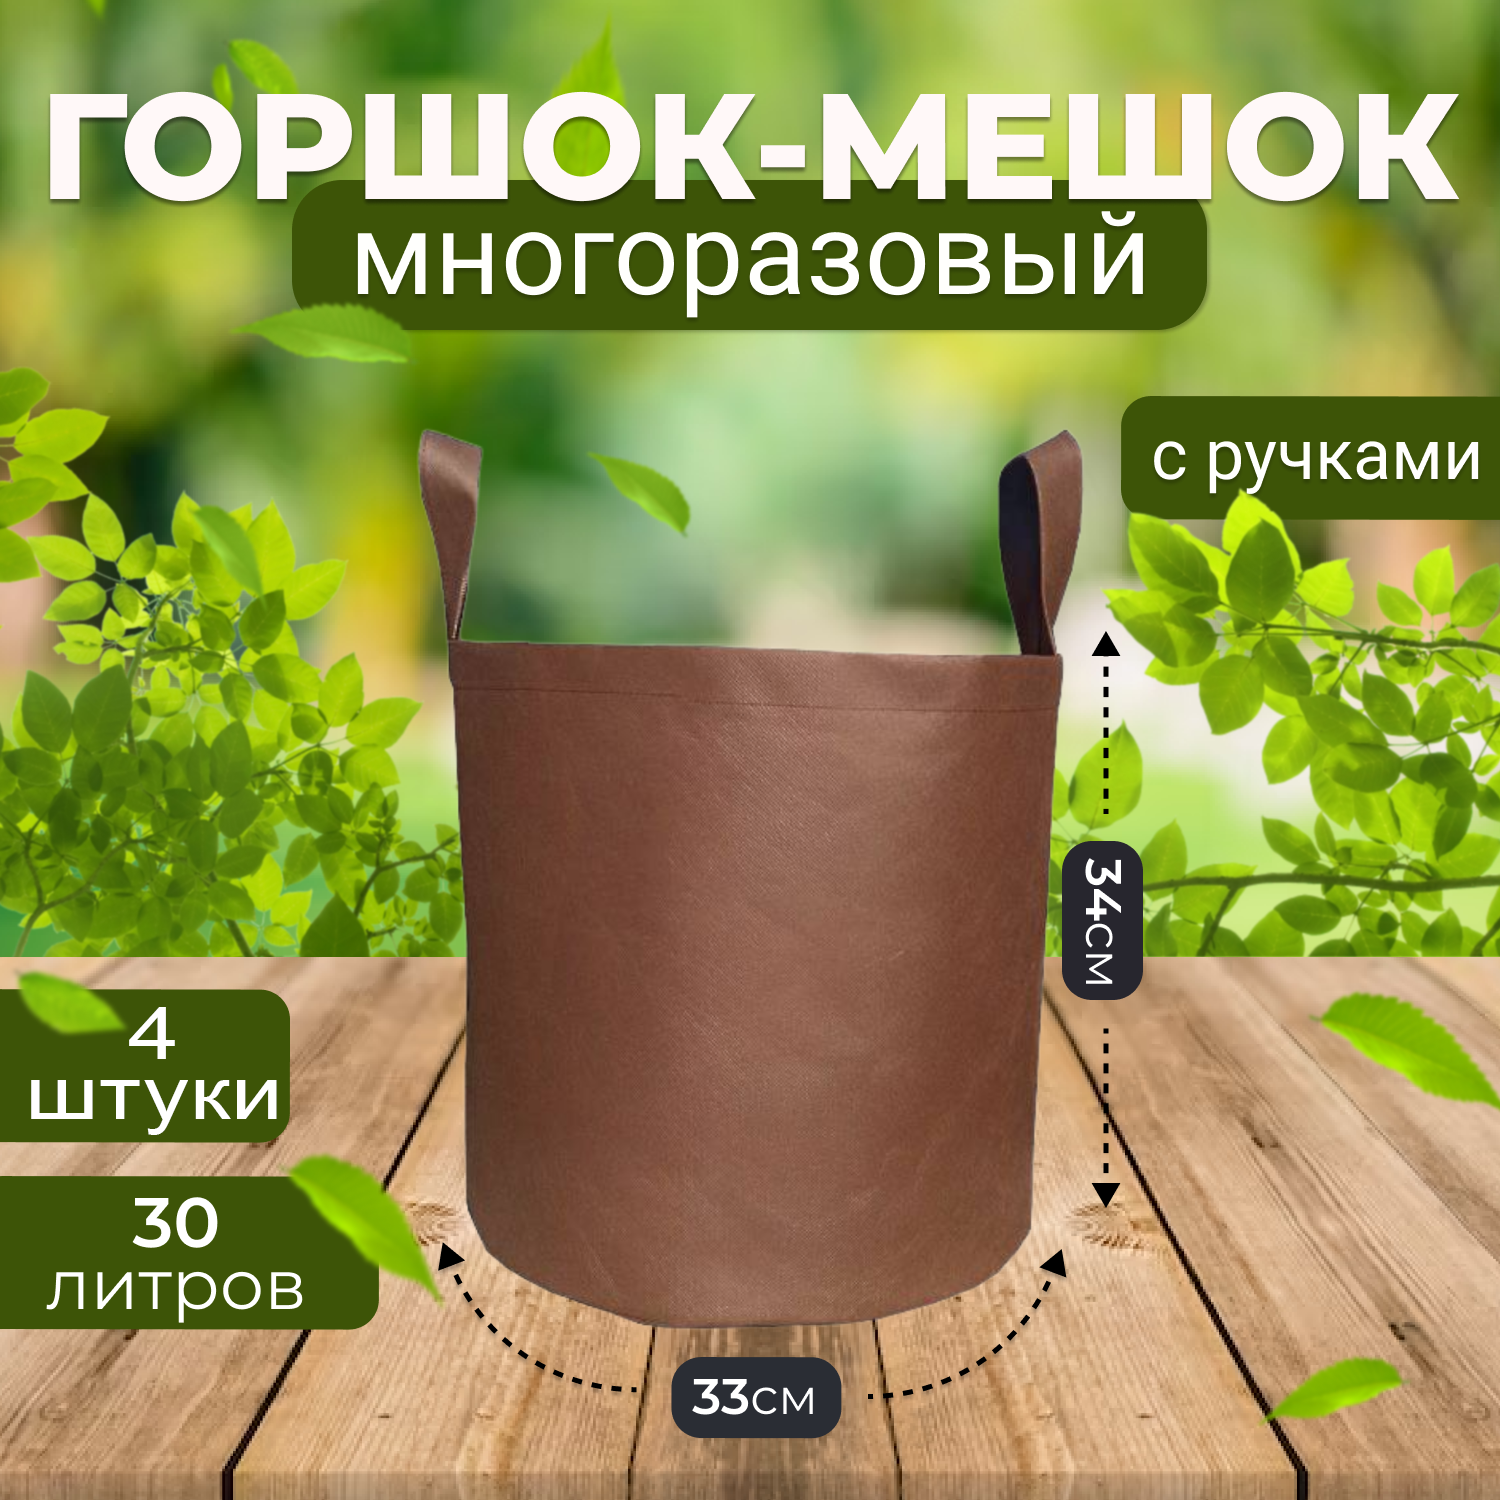 Мешок горшок текстильный из спанбонда Grower Green 30_litrov-Brown_4 30л., 4шт.